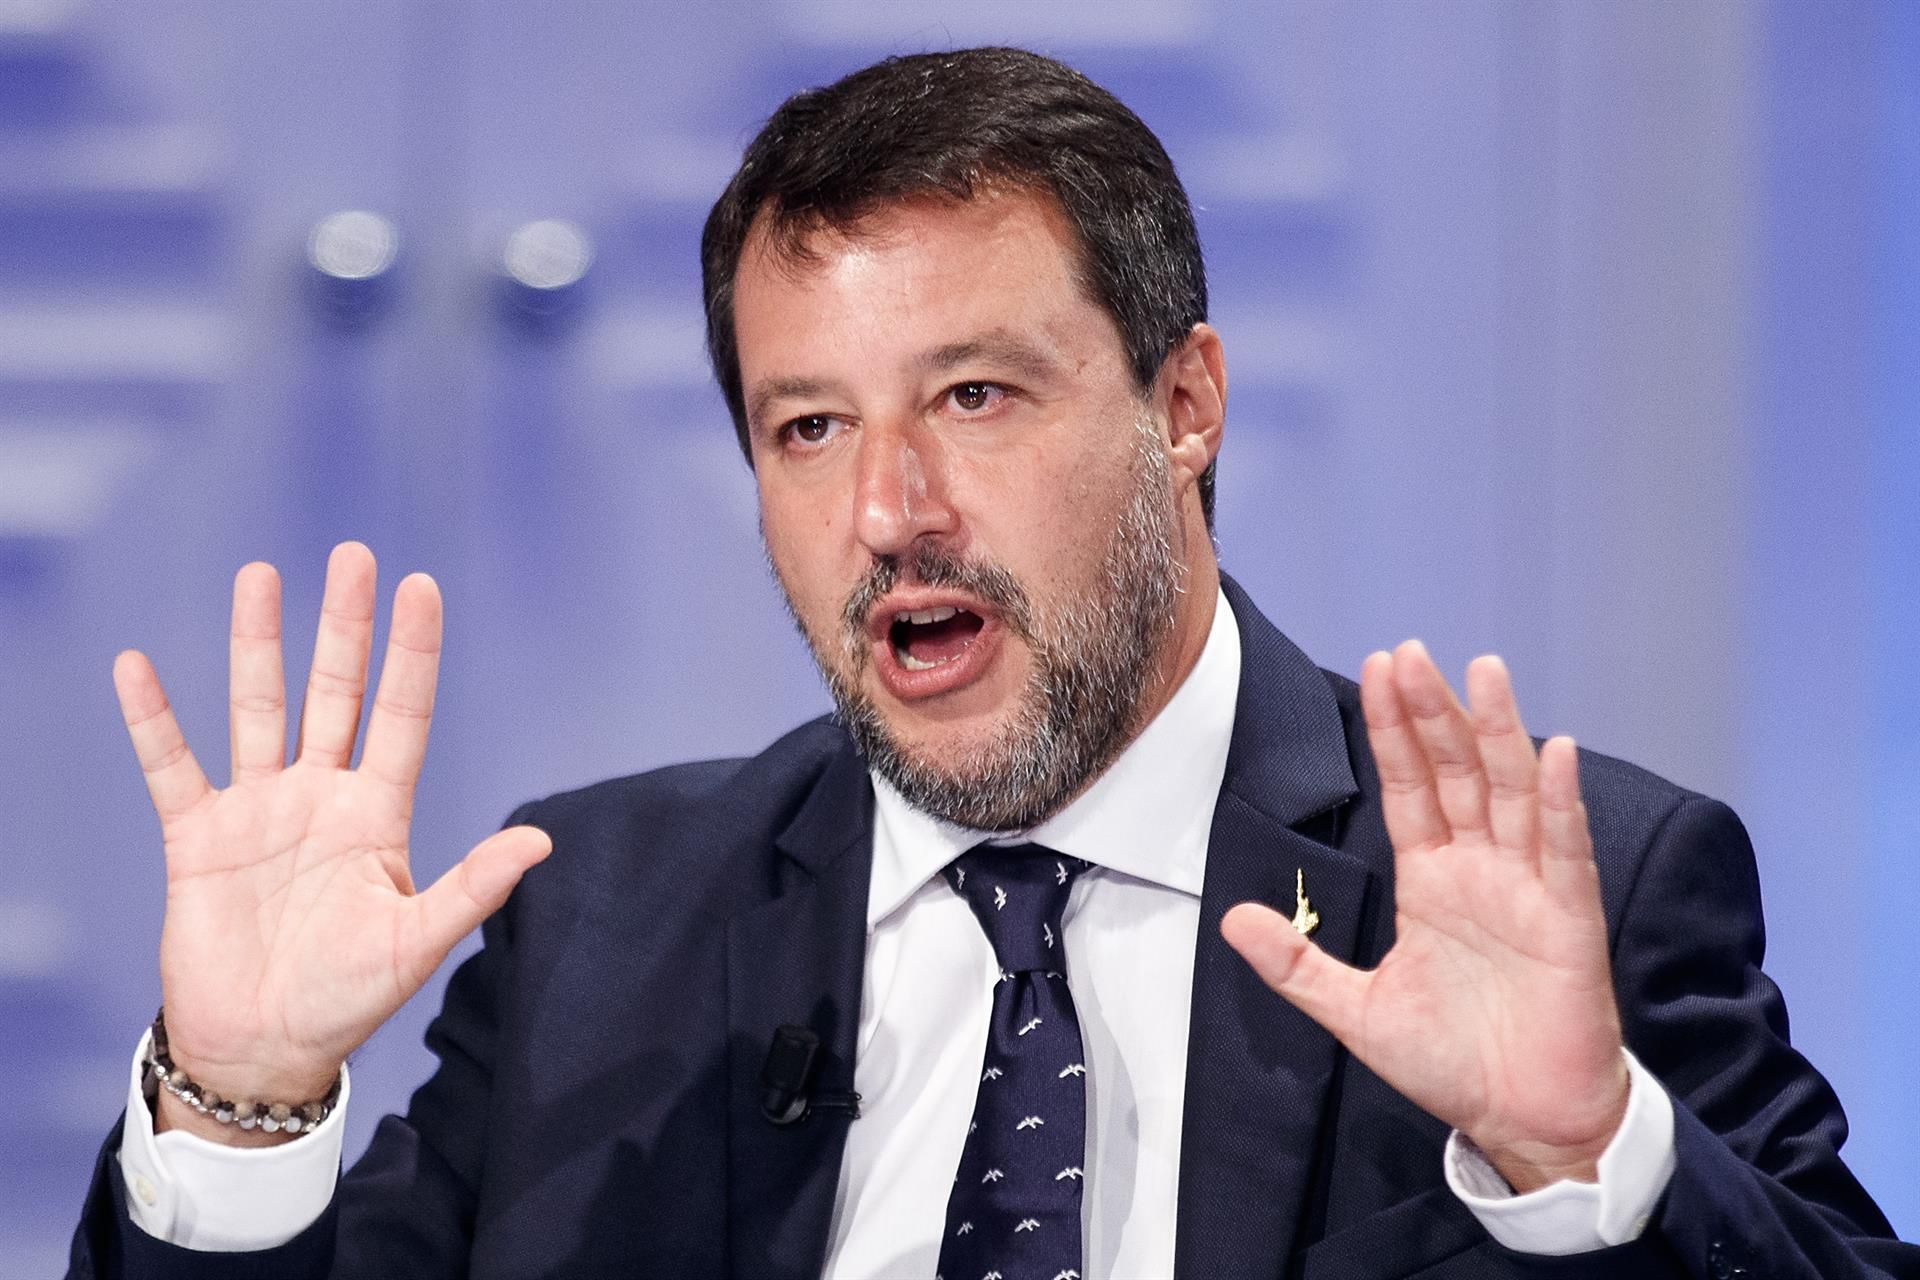 La ultraderecha de Italia opina sobre la detención de Puigdemont: "Espero que Italia no se convierta en protagonista de la venganza a petición de otros países"